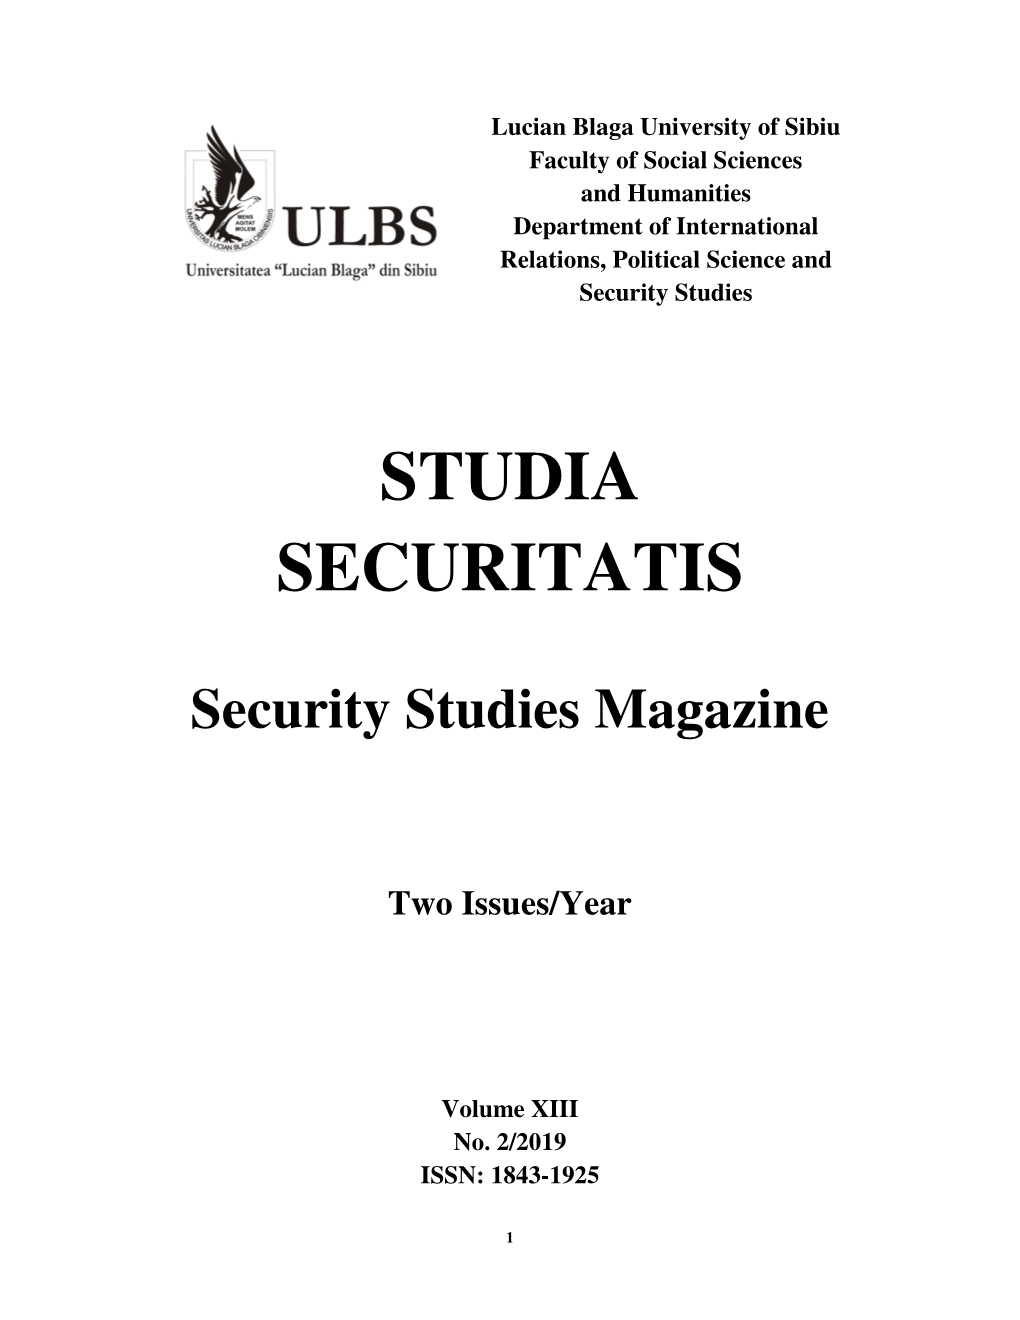 Studia Securitatis 2 2019